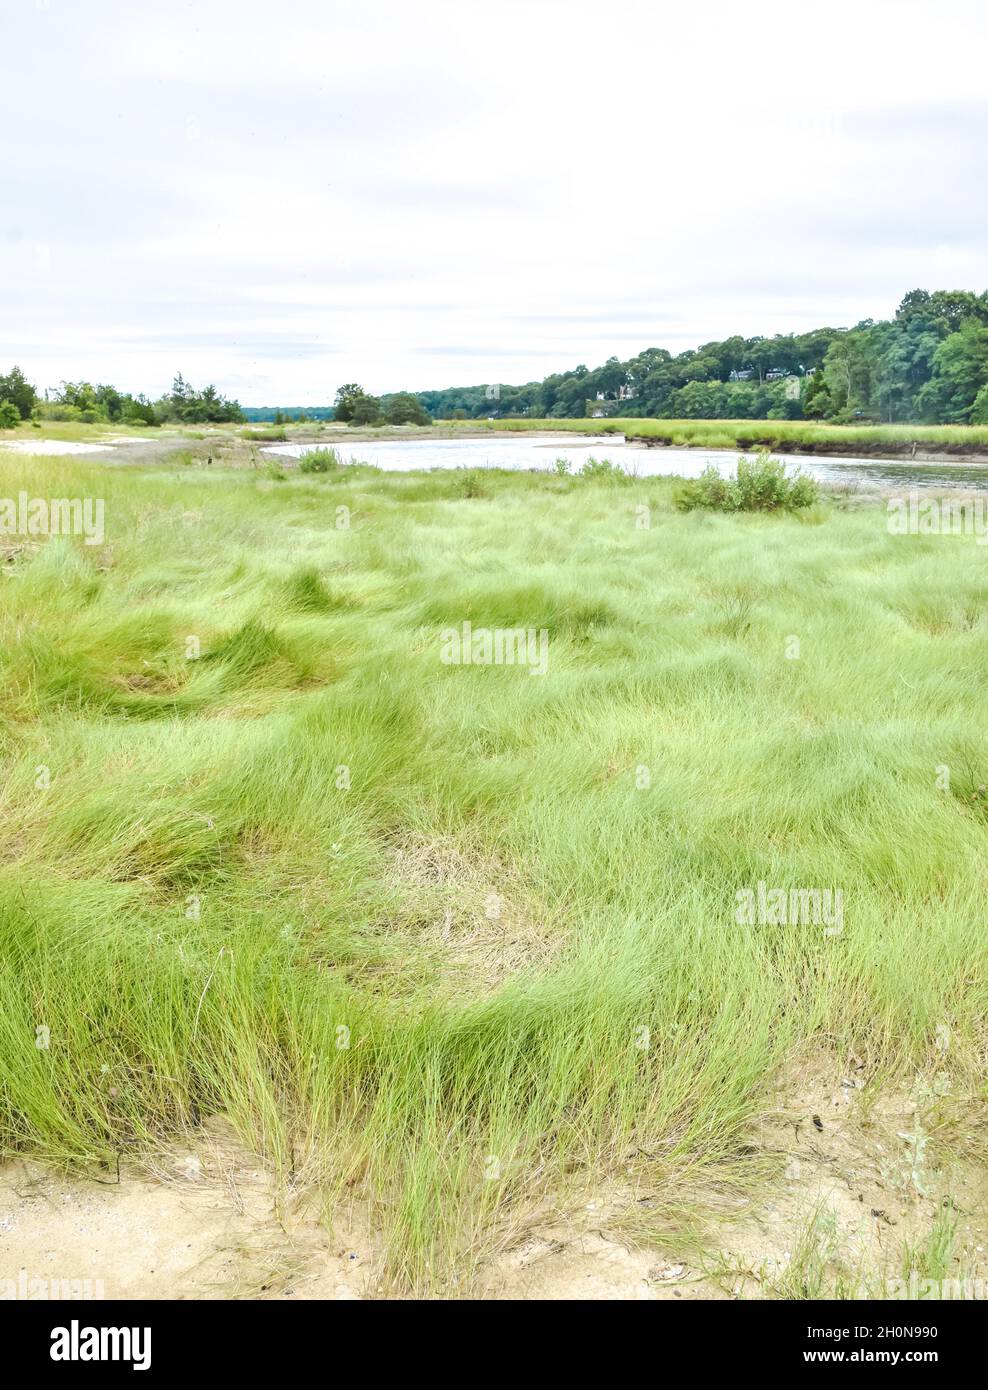 Pastos altos de pantano (Spartina patens) y spikata disticlious) en el complejo West Meadow Marsh en Stony Brook, Long Island, Nueva York. Foto de stock